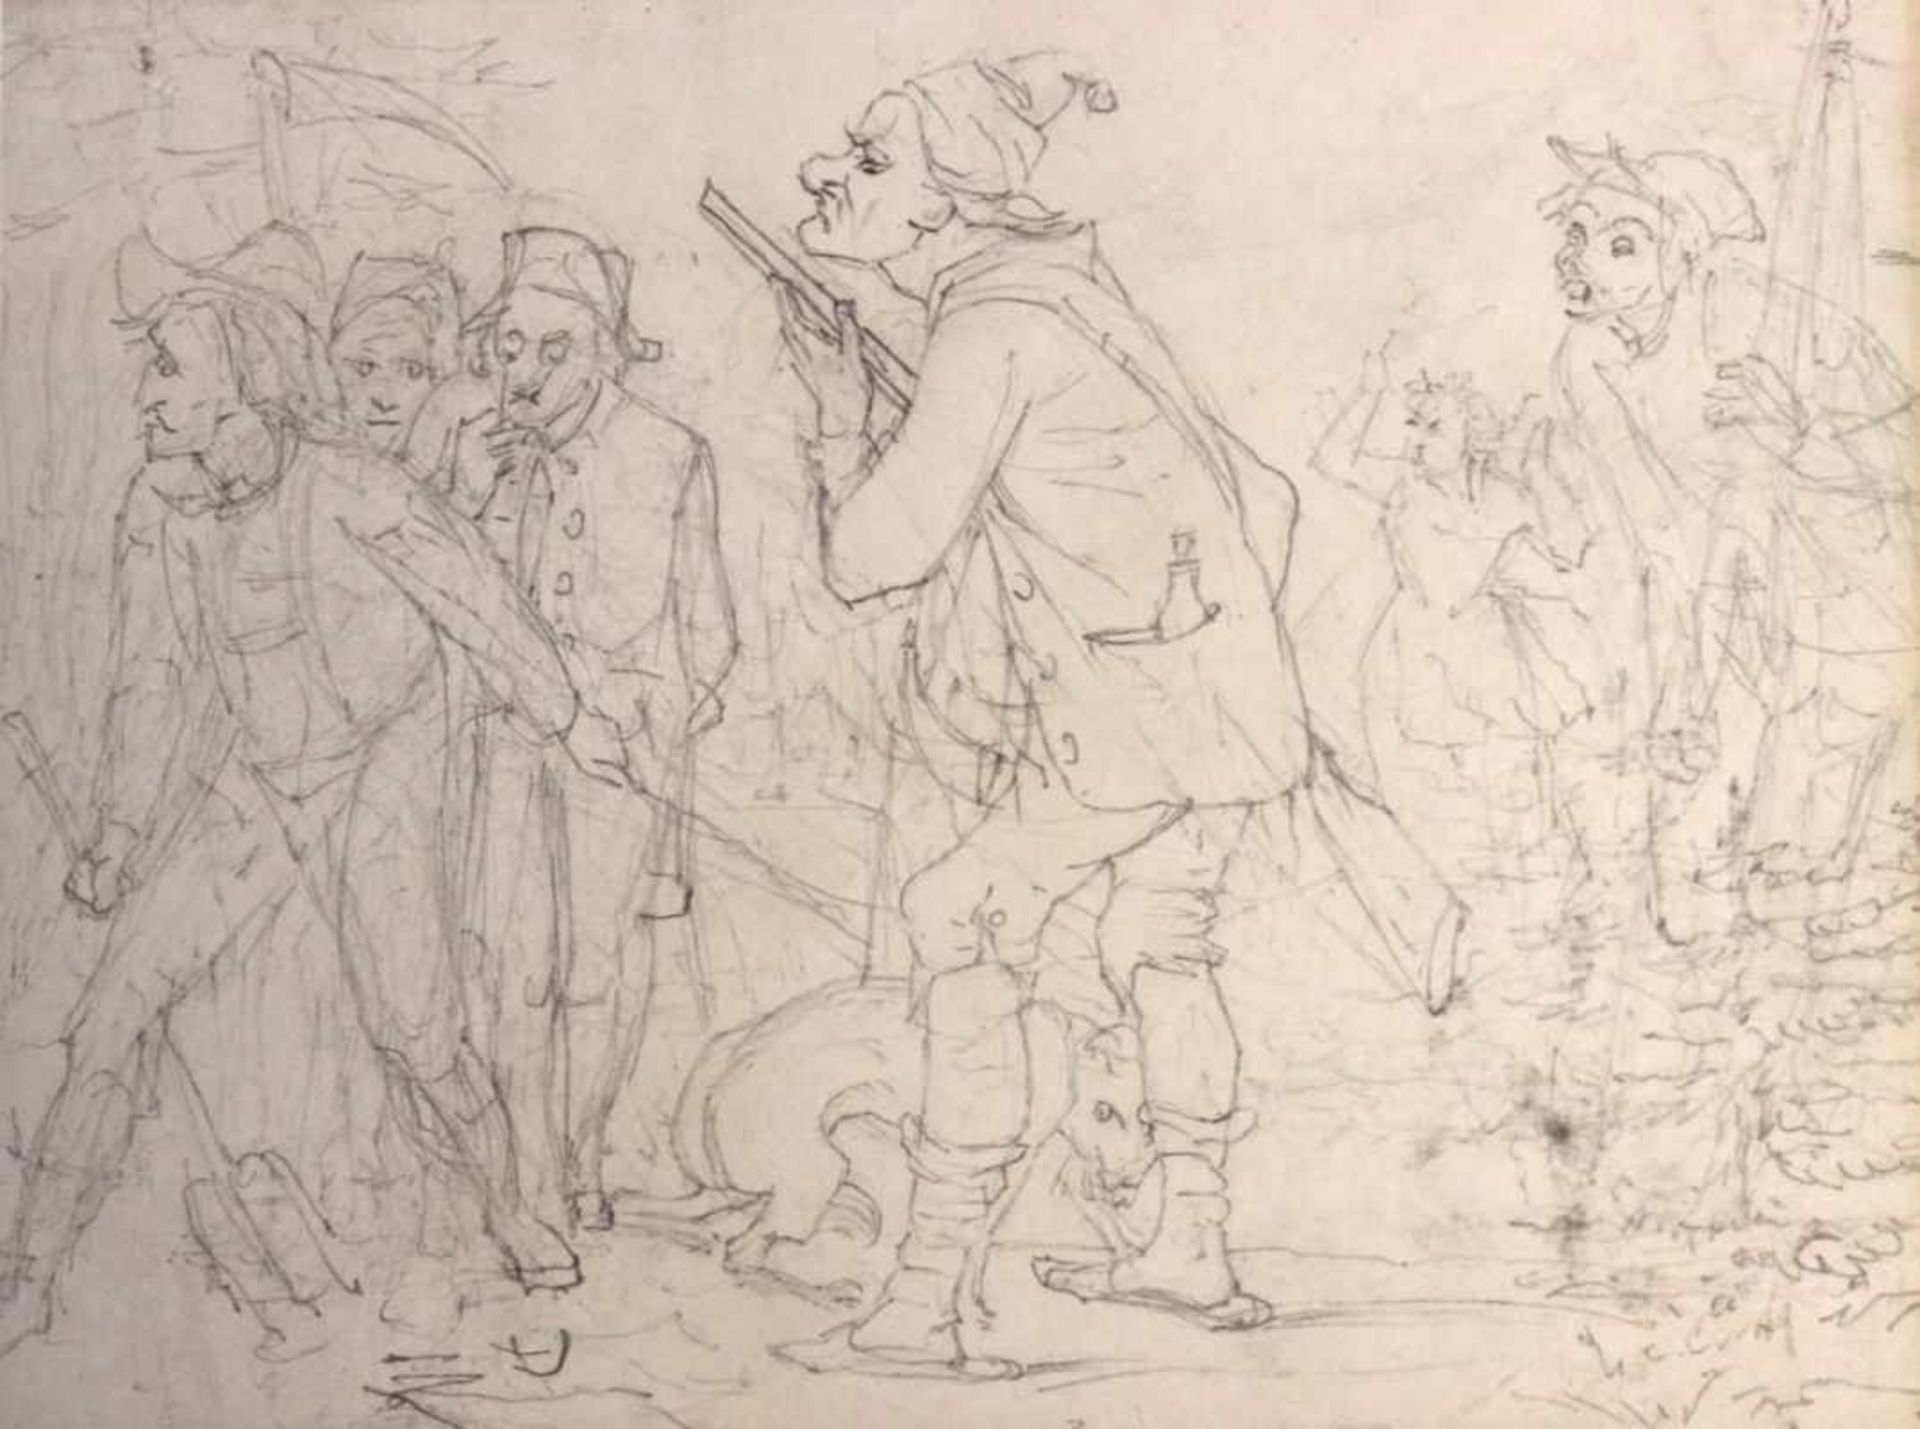 Zeichnung - Adolf Oberländer (1845 Regensburg - 1923 München) "Militärkarikaturen", rückseitig